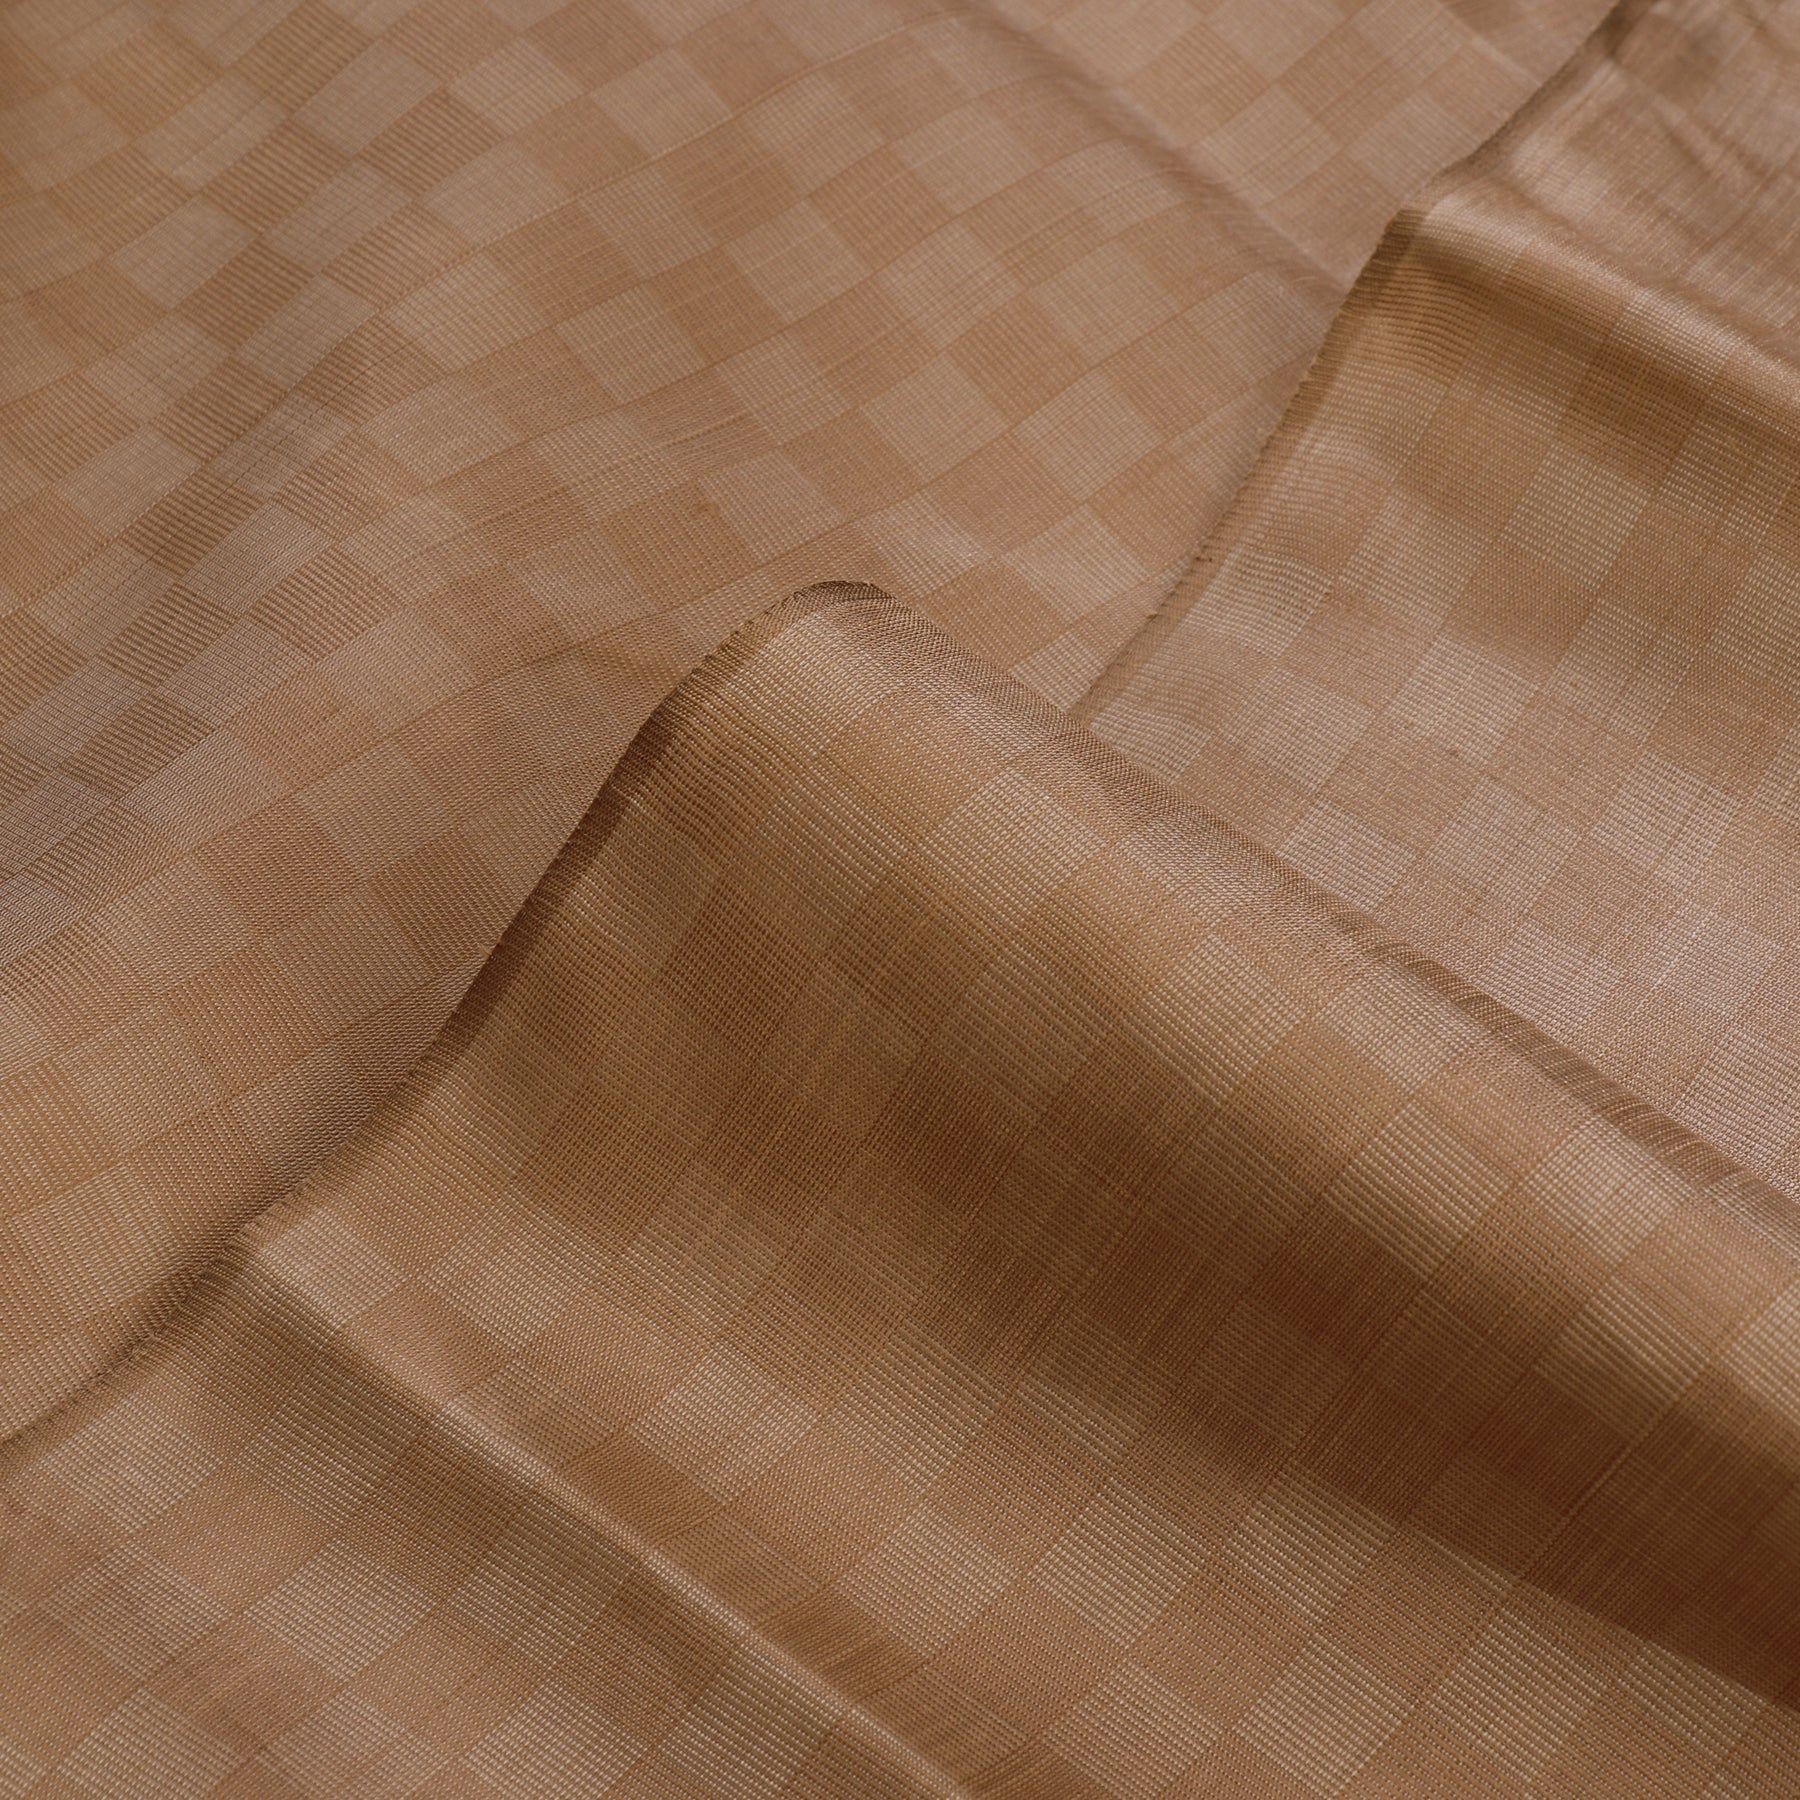 Kanakavalli Kanjivaram Silk Fabric Length 20-110-HF001-01524 - Profile View